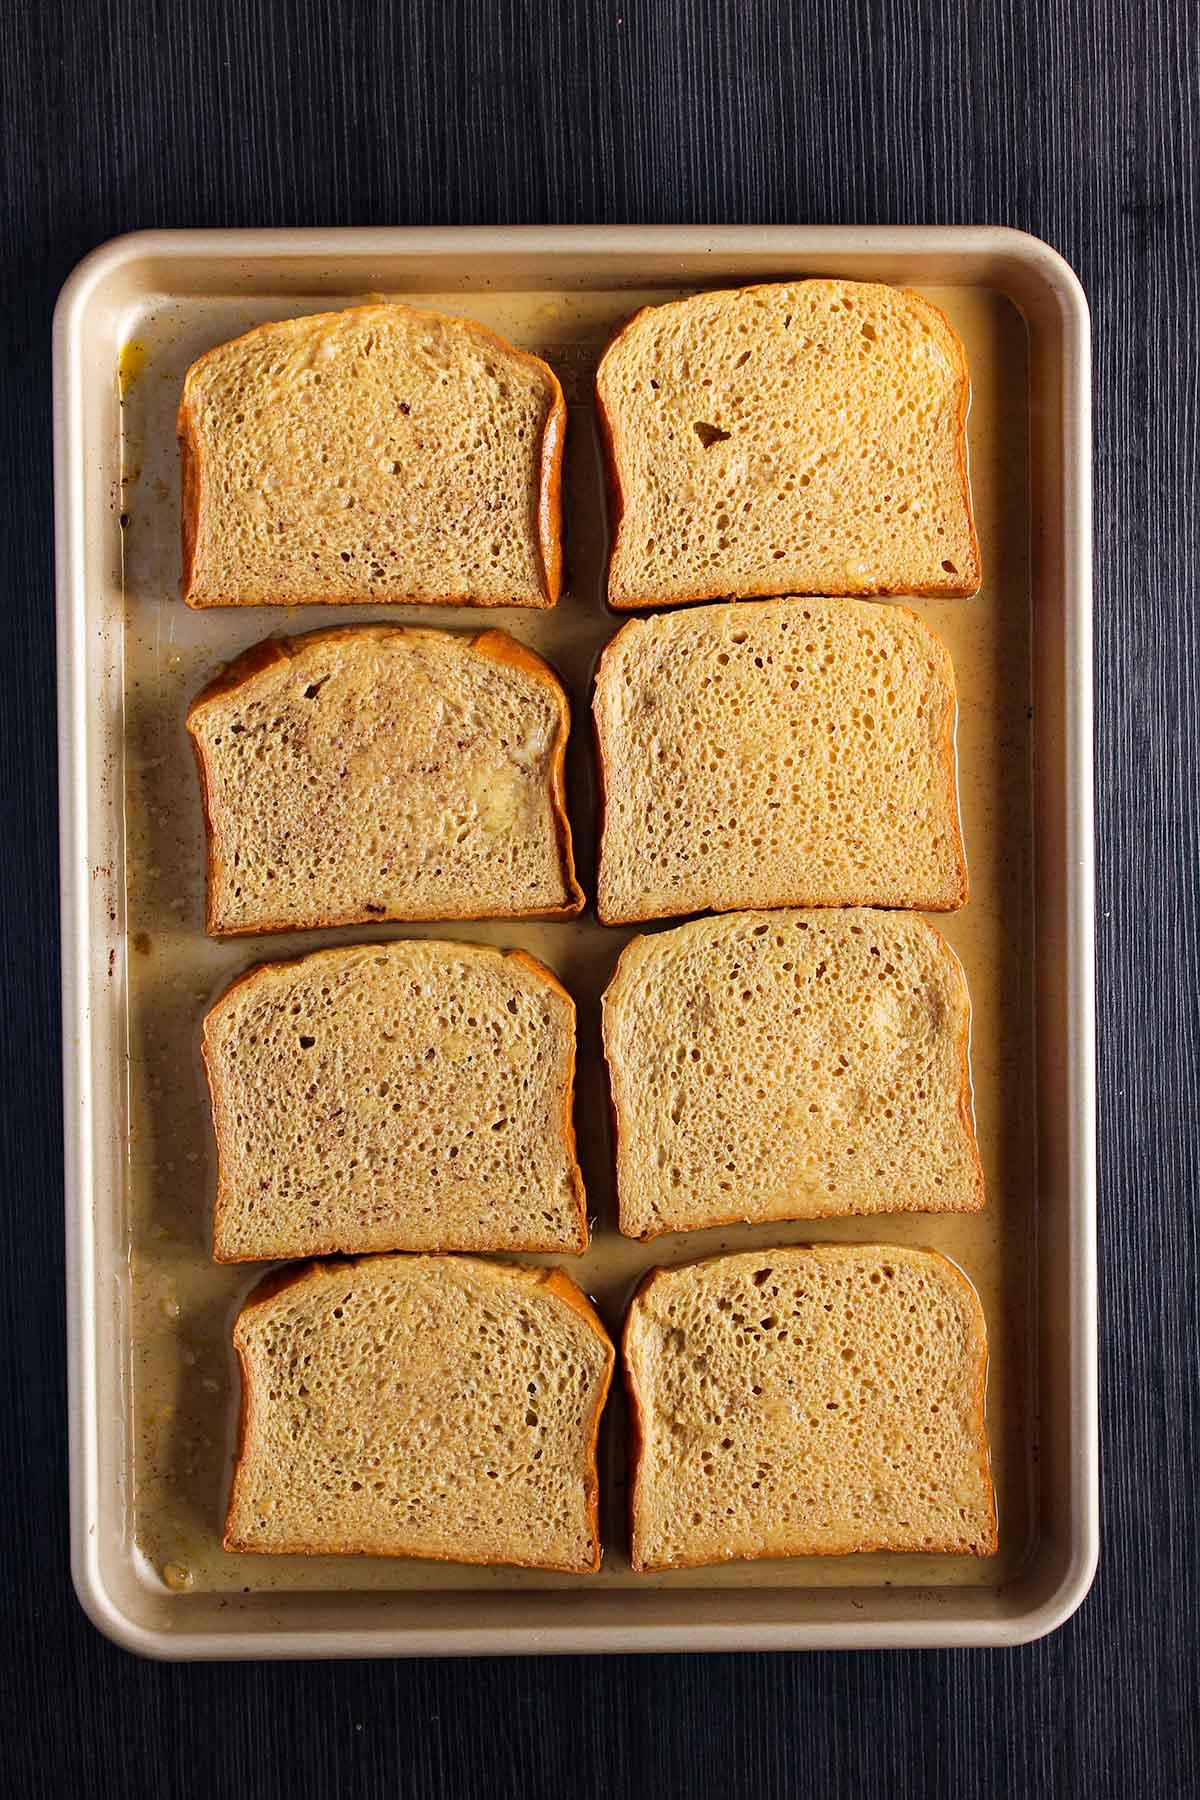 Bread soaking in egg batter in a sheet pan.